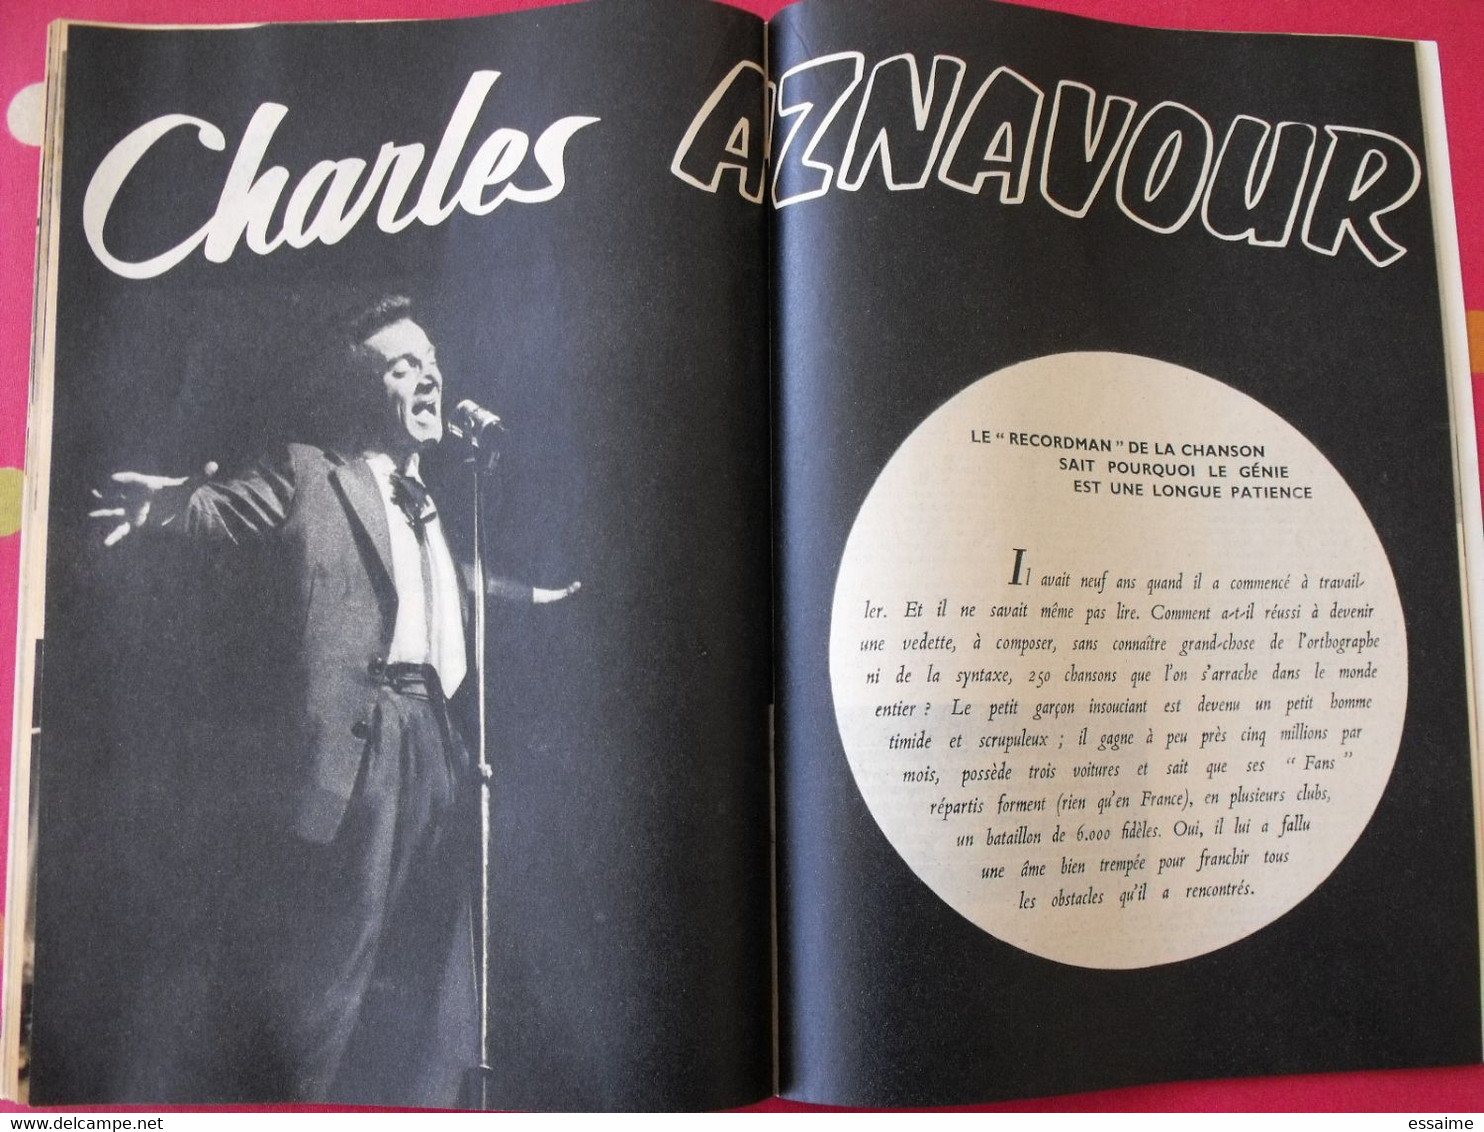 revue Jeunesse cinéma n° 19 de 1959. agnès laurent brigitte bardot marylin monroe leslie caron dufilho aznavour loren